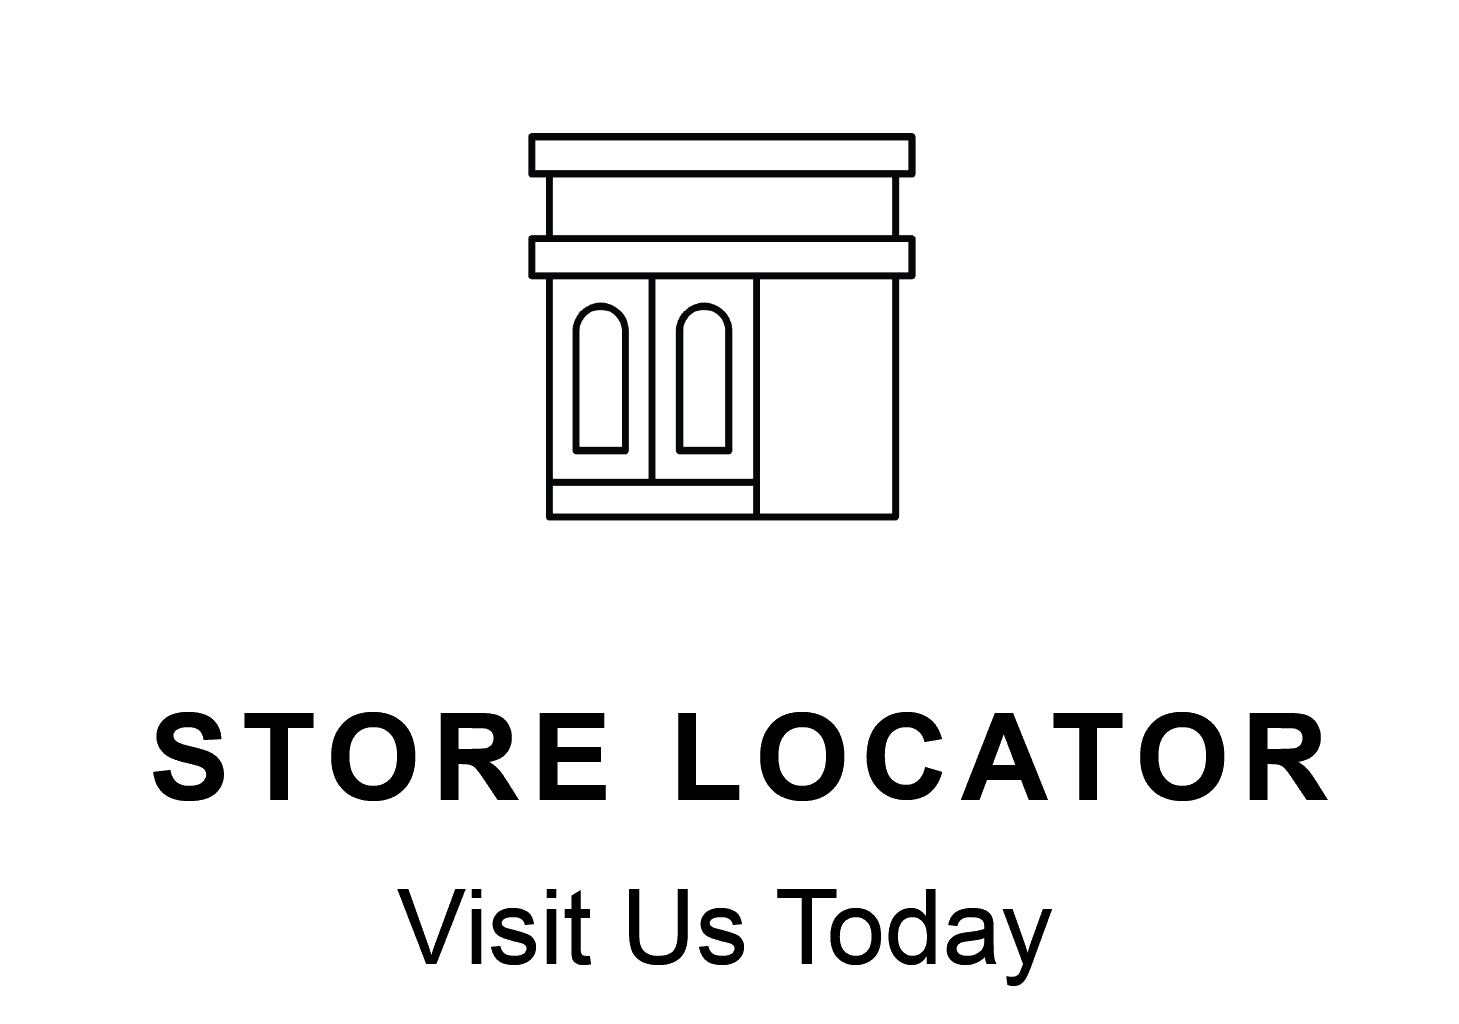 Store Locator